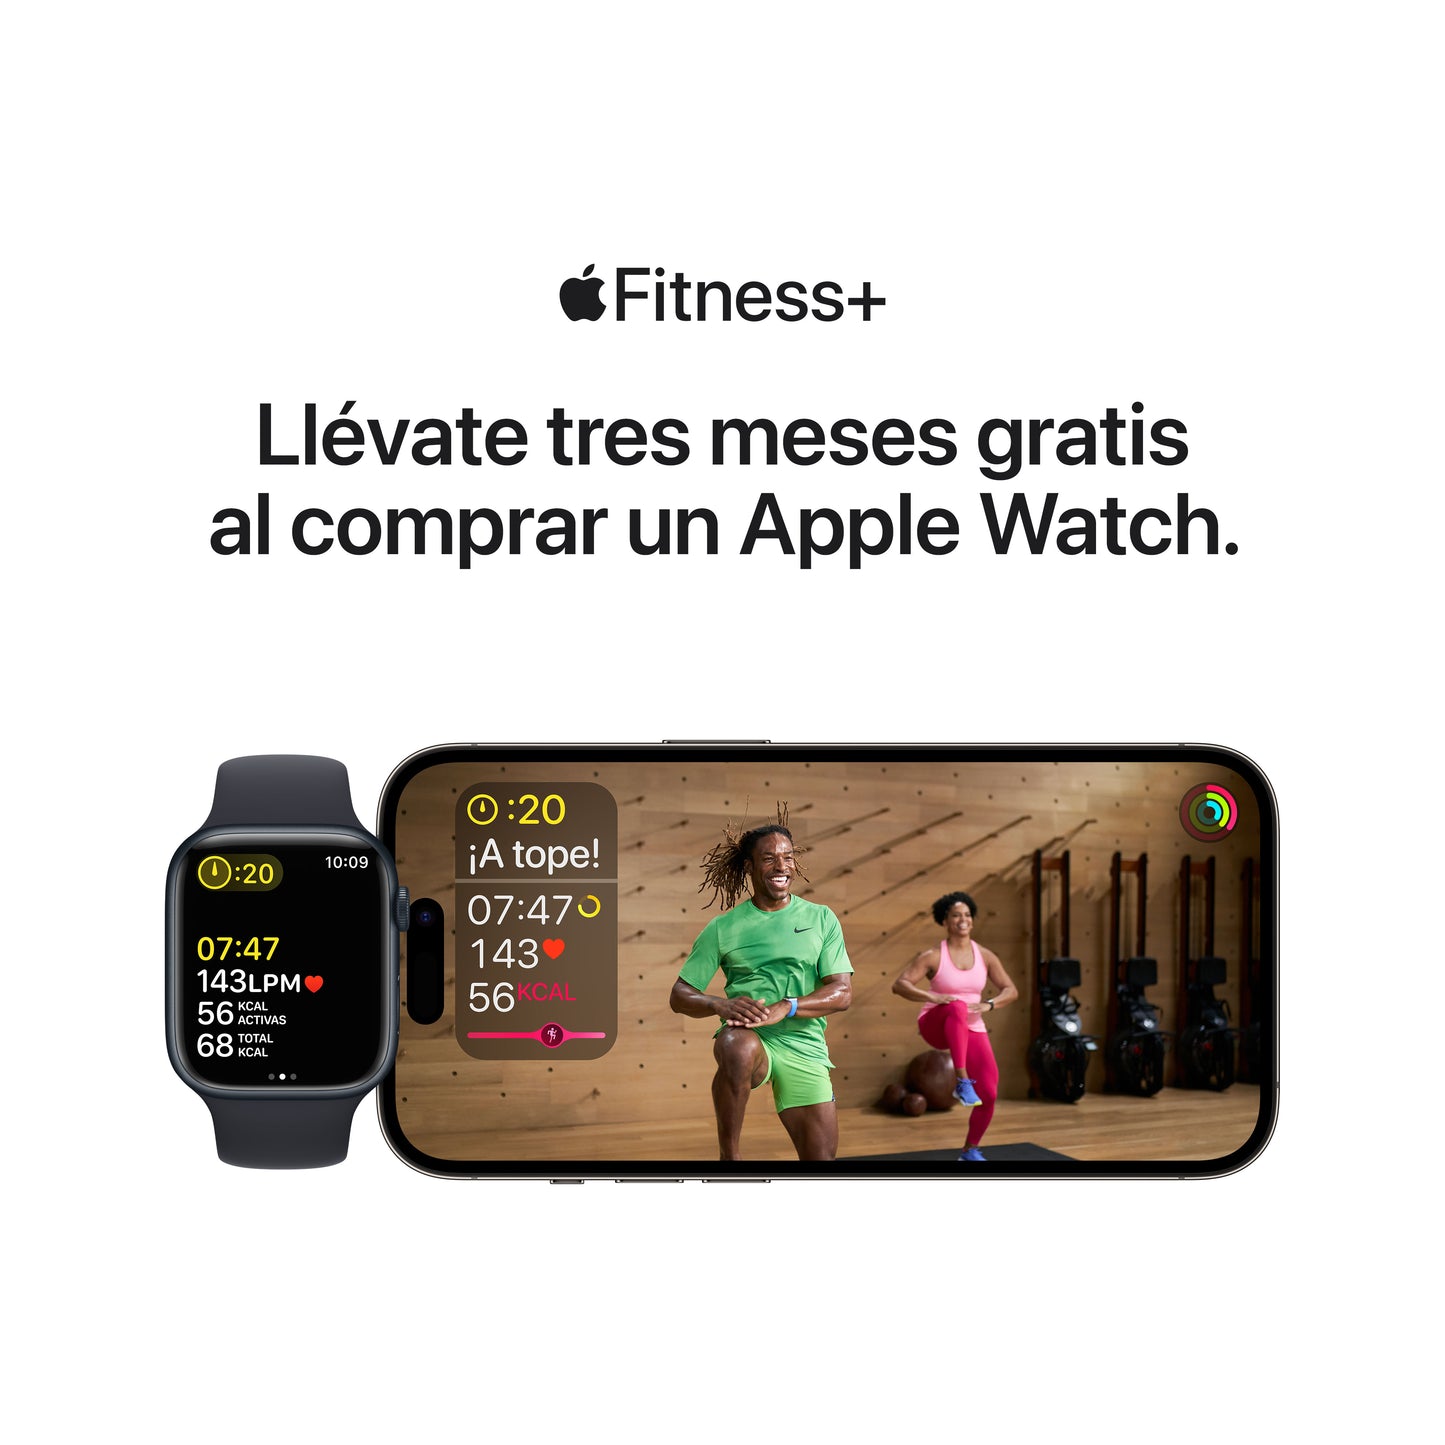 Apple Watch SE Monitorea tu actividad diaria en www.mac-center.co